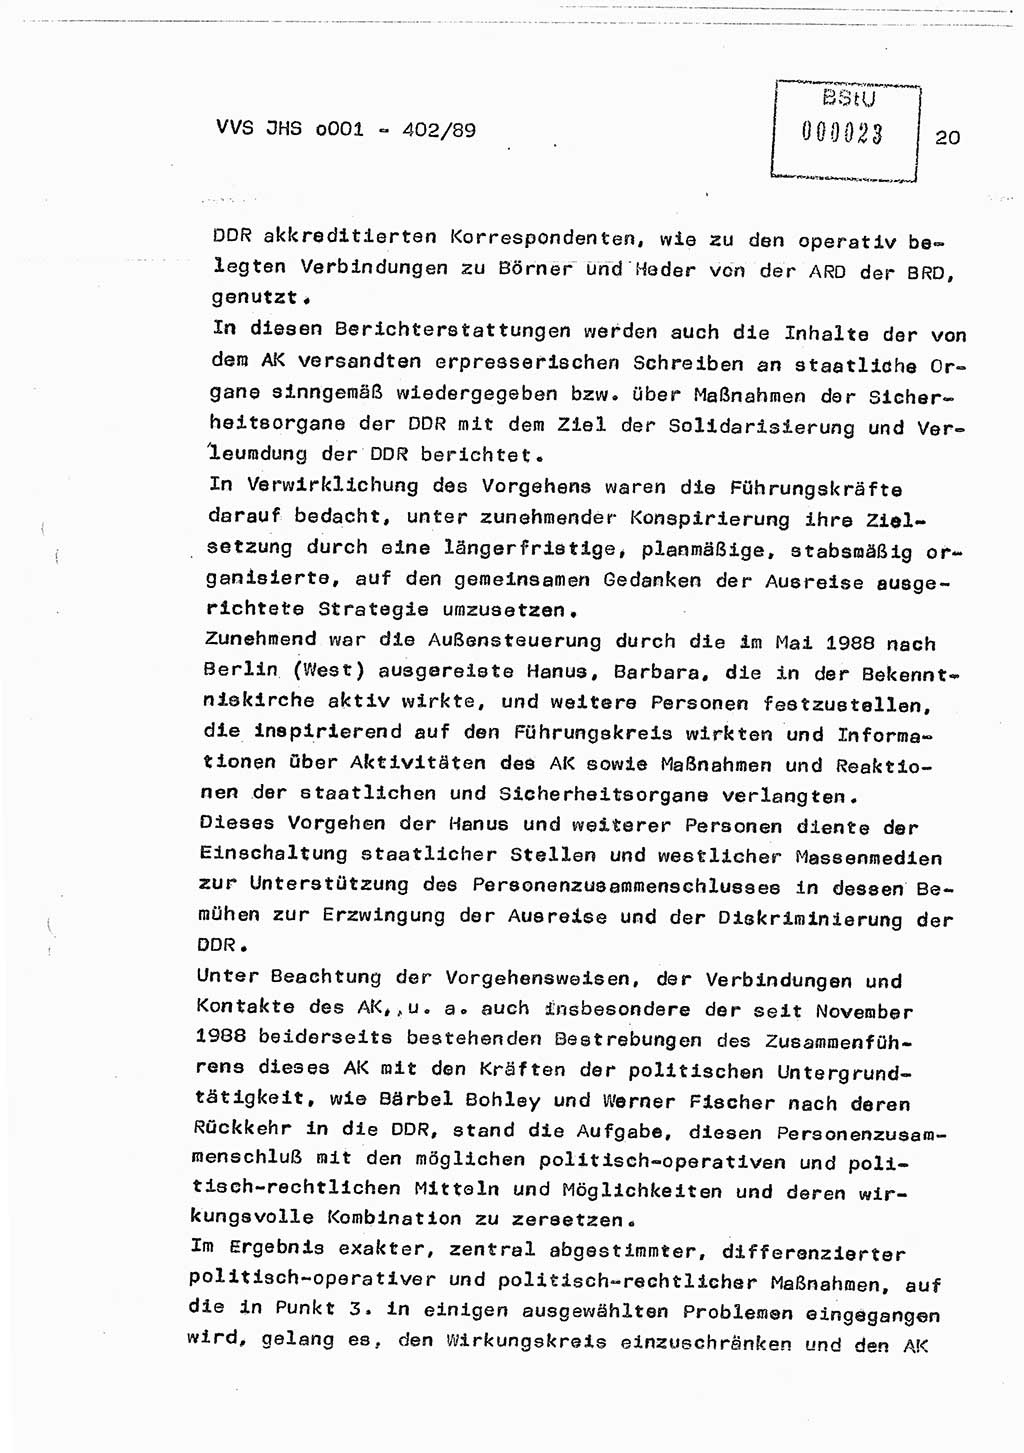 Diplomarbeit Major Günter Müller (HA Ⅸ/9), Ministerium für Staatssicherheit (MfS) [Deutsche Demokratische Republik (DDR)], Juristische Hochschule (JHS), Vertrauliche Verschlußsache (VVS) o001-402/89, Potsdam 1989, Seite 20 (Dipl.-Arb. MfS DDR JHS VVS o001-402/89 1989, S. 20)